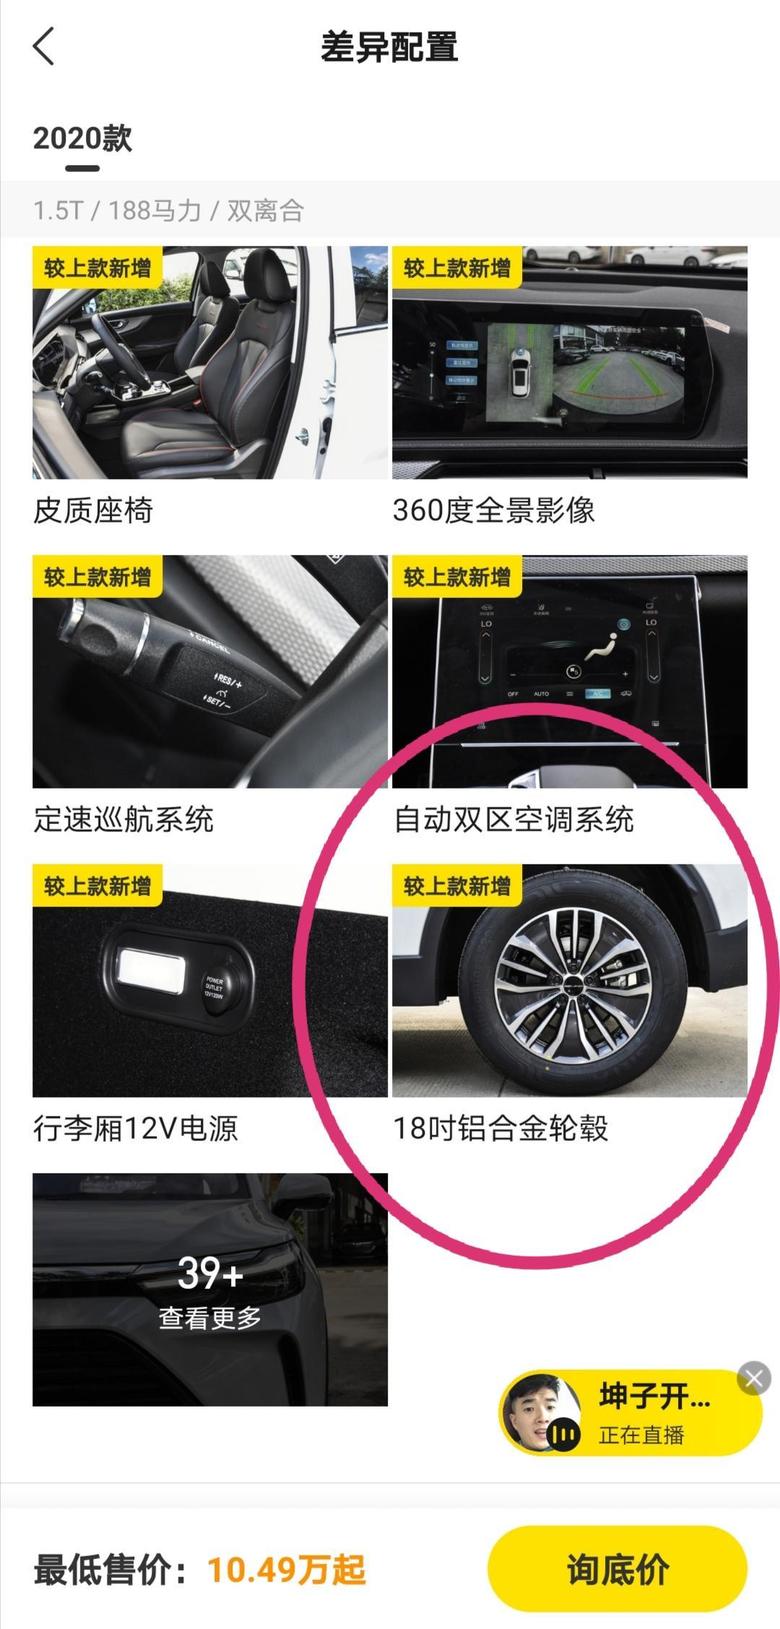 北京x7 请问参数配置里面注明全系标配了18寸铝合金轮毂，为何差异配置里面又说18寸铝合金轮毂属于新增差异配置？